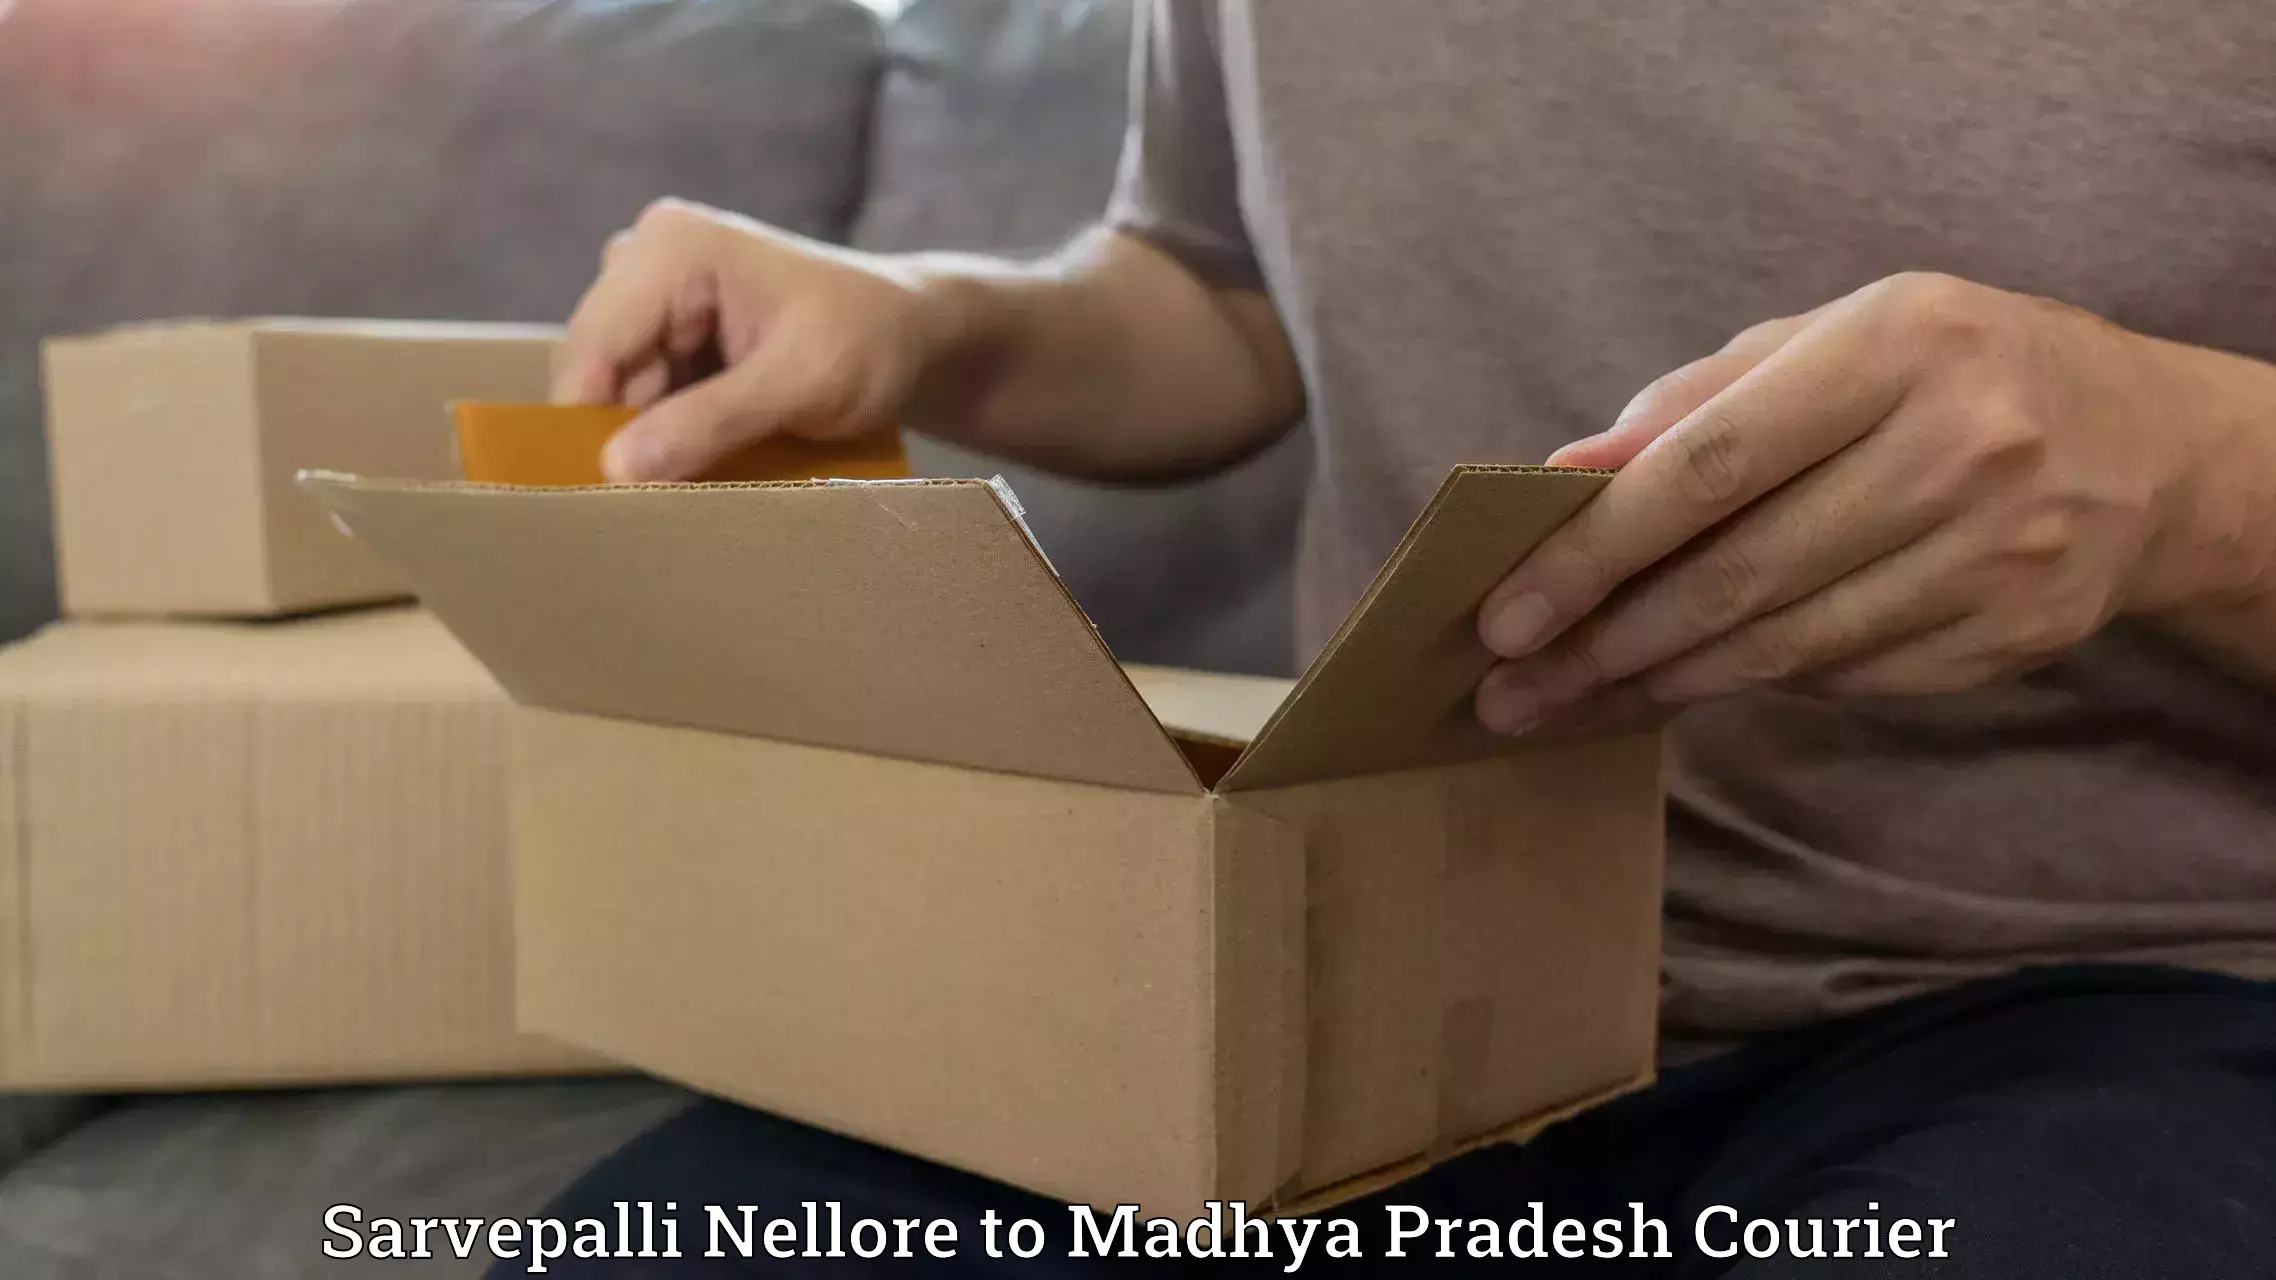 Heavy parcel delivery Sarvepalli Nellore to Indore